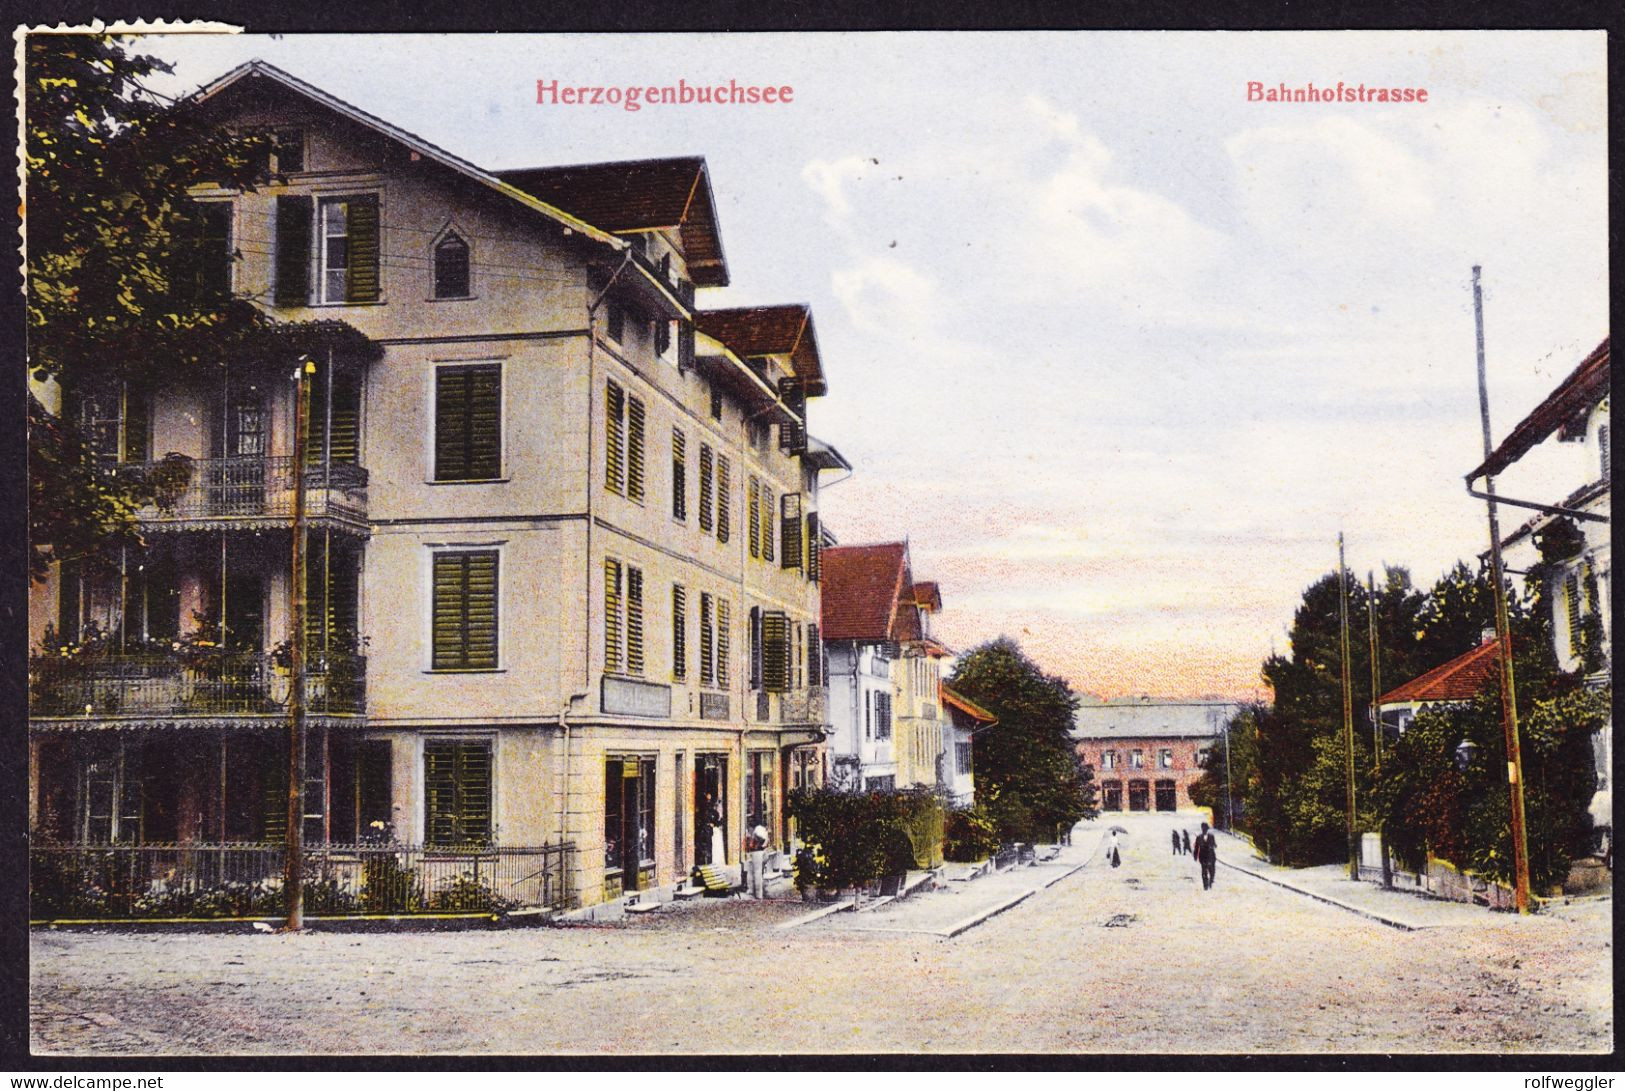 1910 Per Bahnpost Gelaufene AK, Herzogenbuchsee, Bahnhofstrasse. - Herzogenbuchsee